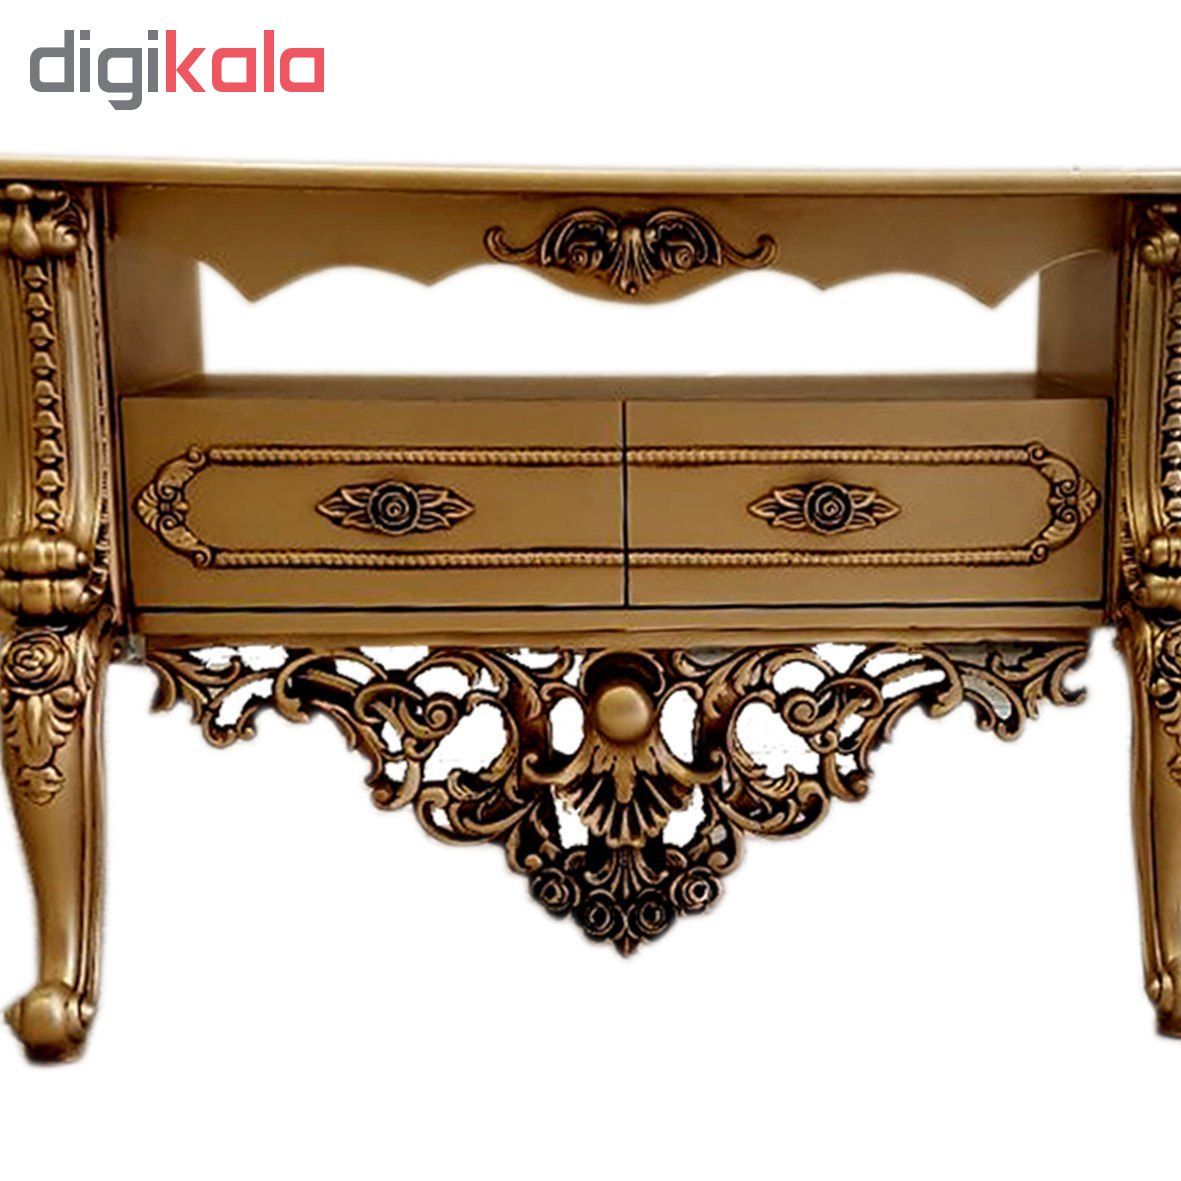 میز تلویزیون طرح پایه بلند مدل karino gold